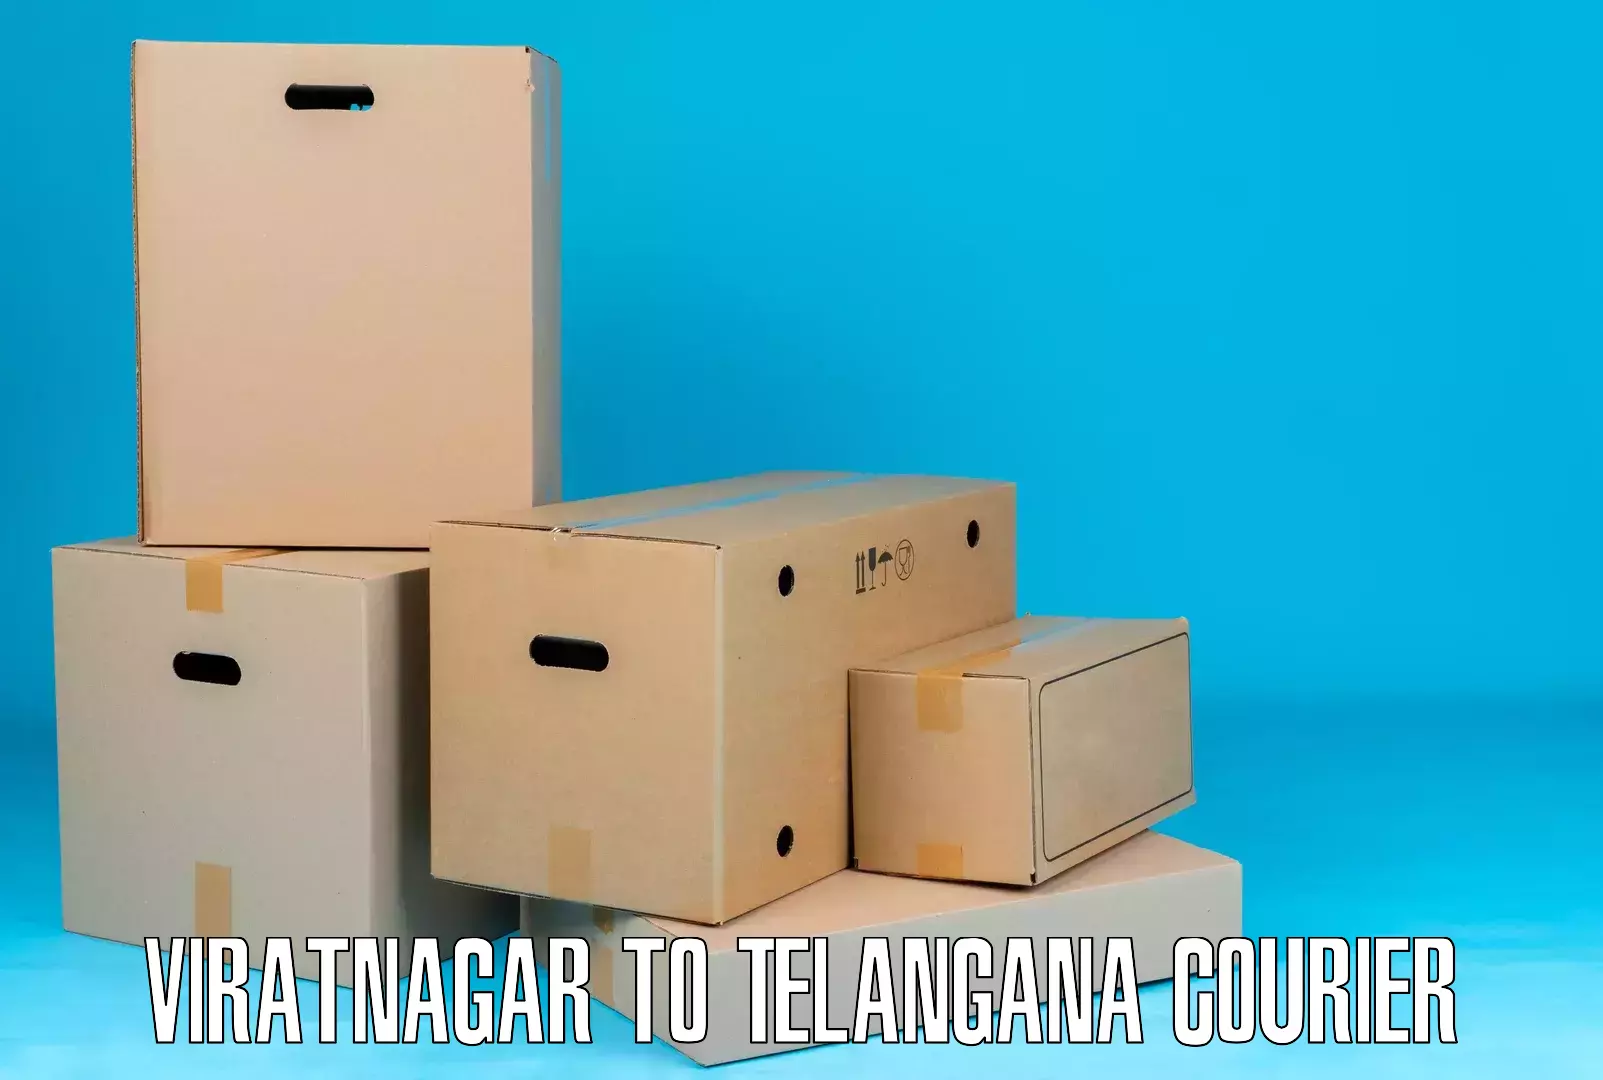 Efficient freight transportation Viratnagar to Sikanderguda